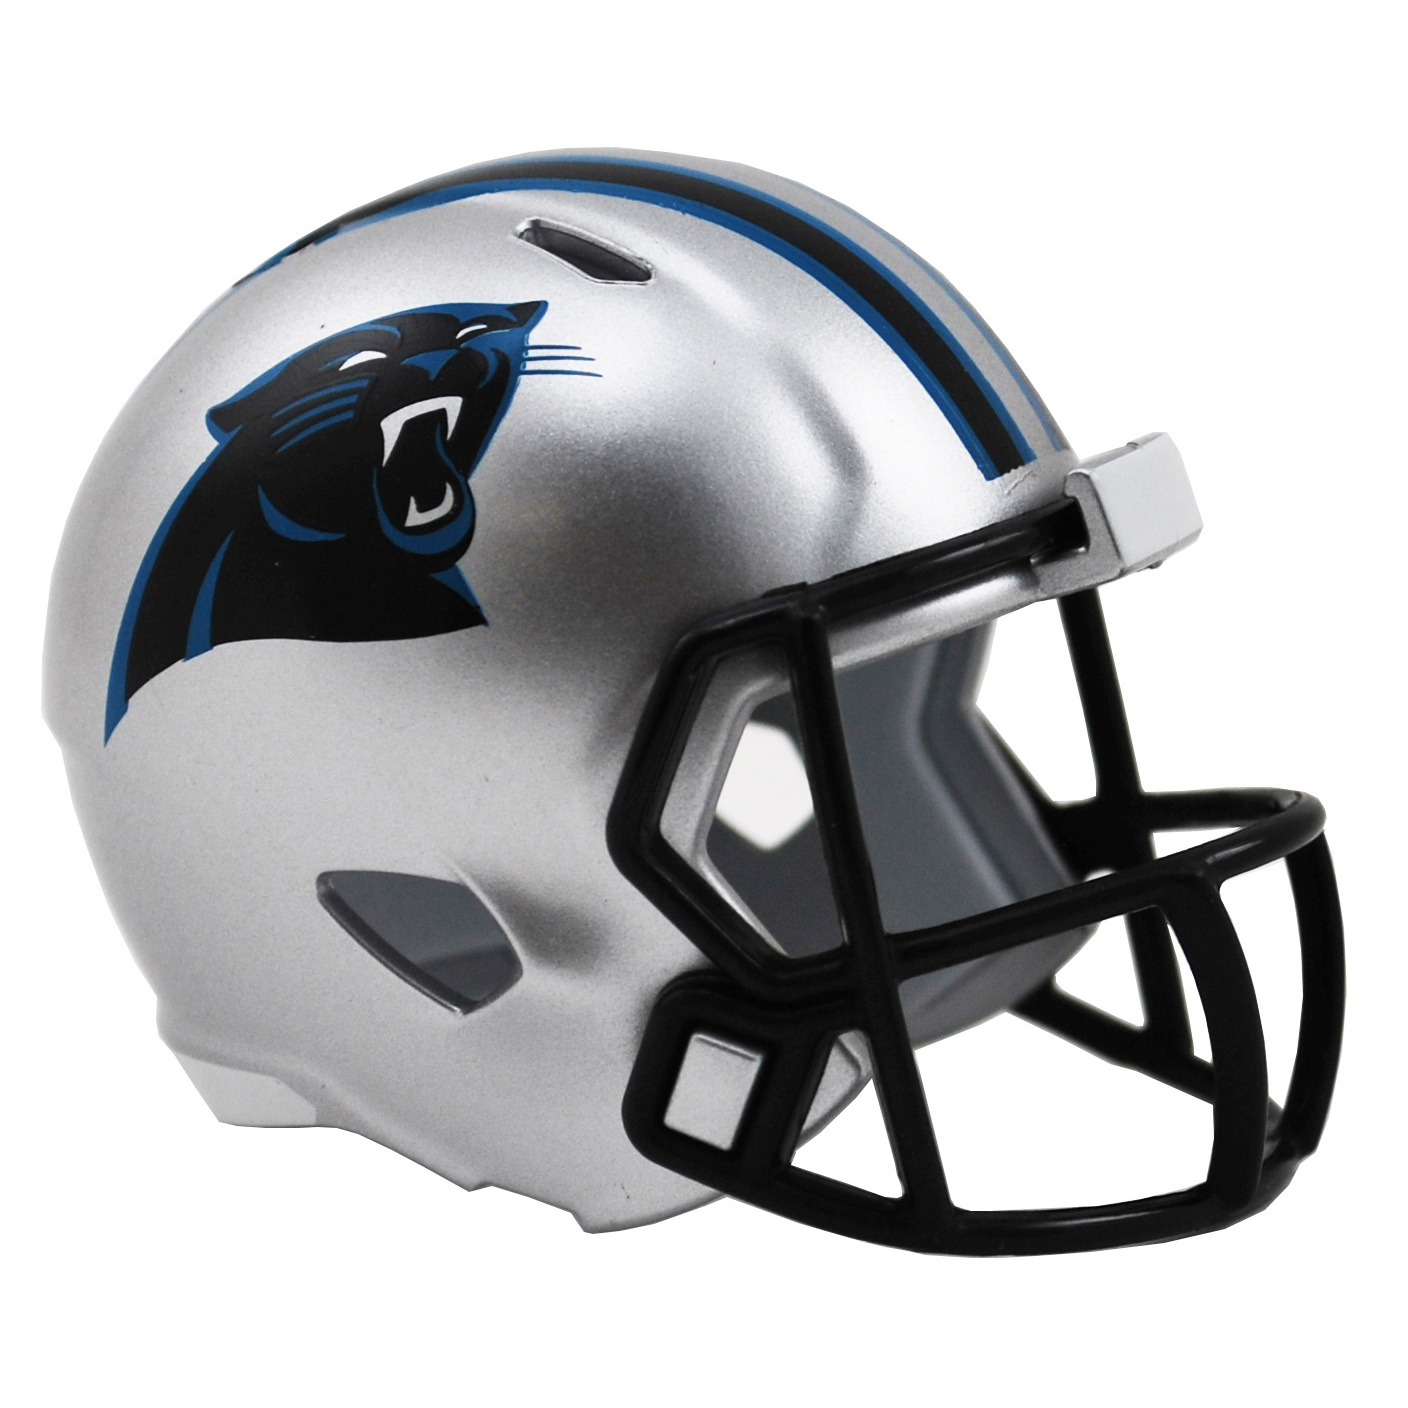 Riddell Nfl Pocket Size Single Helm Carolina Panthers, Black/Blue